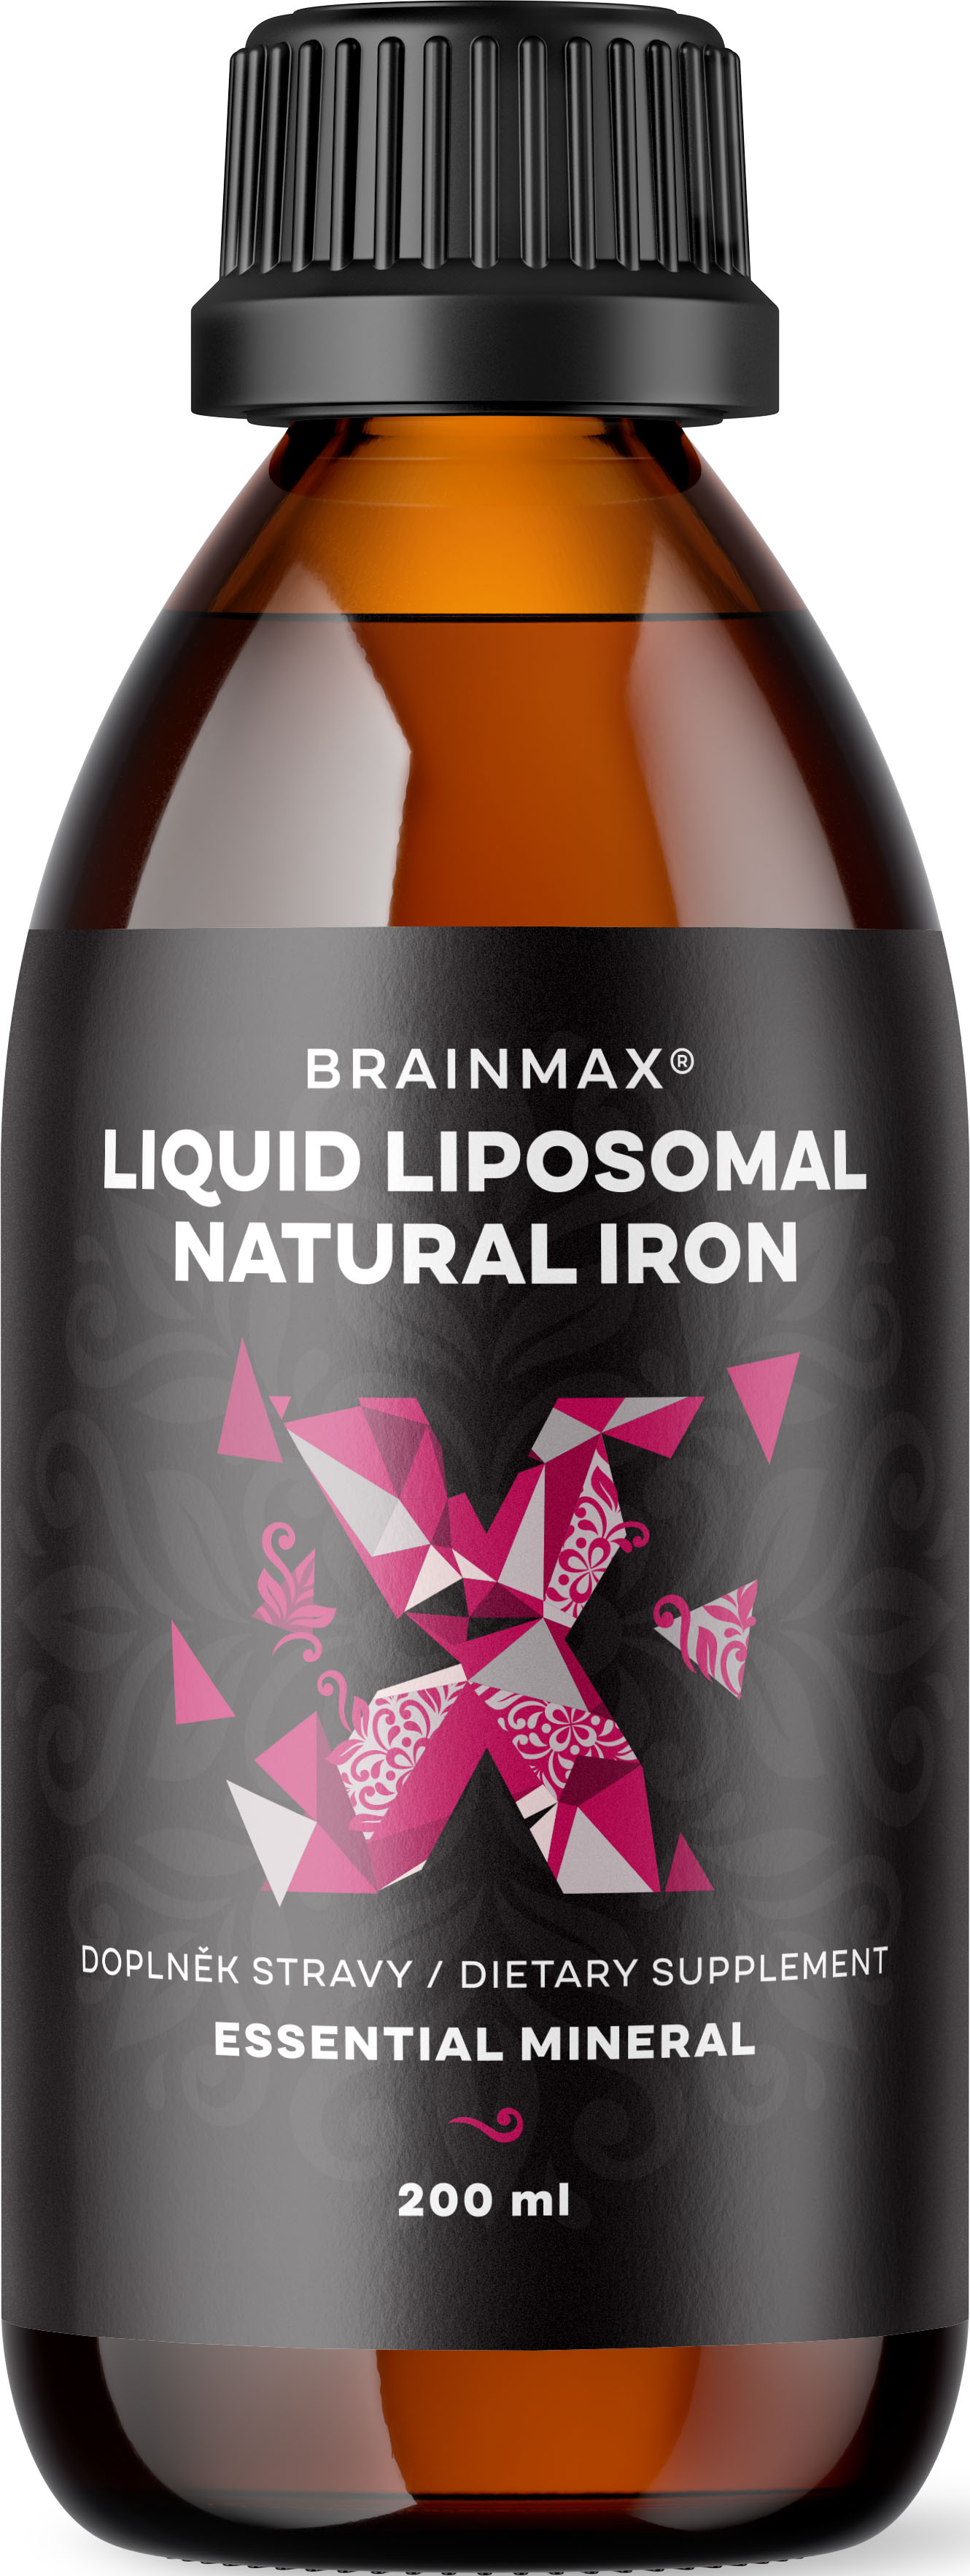 BrainMax Liposomal Natural Iron, lipozomální železo, 200 ml Tekuté železo v liposomální formě s višňovo-citronovou příchutí, doplněk stravy